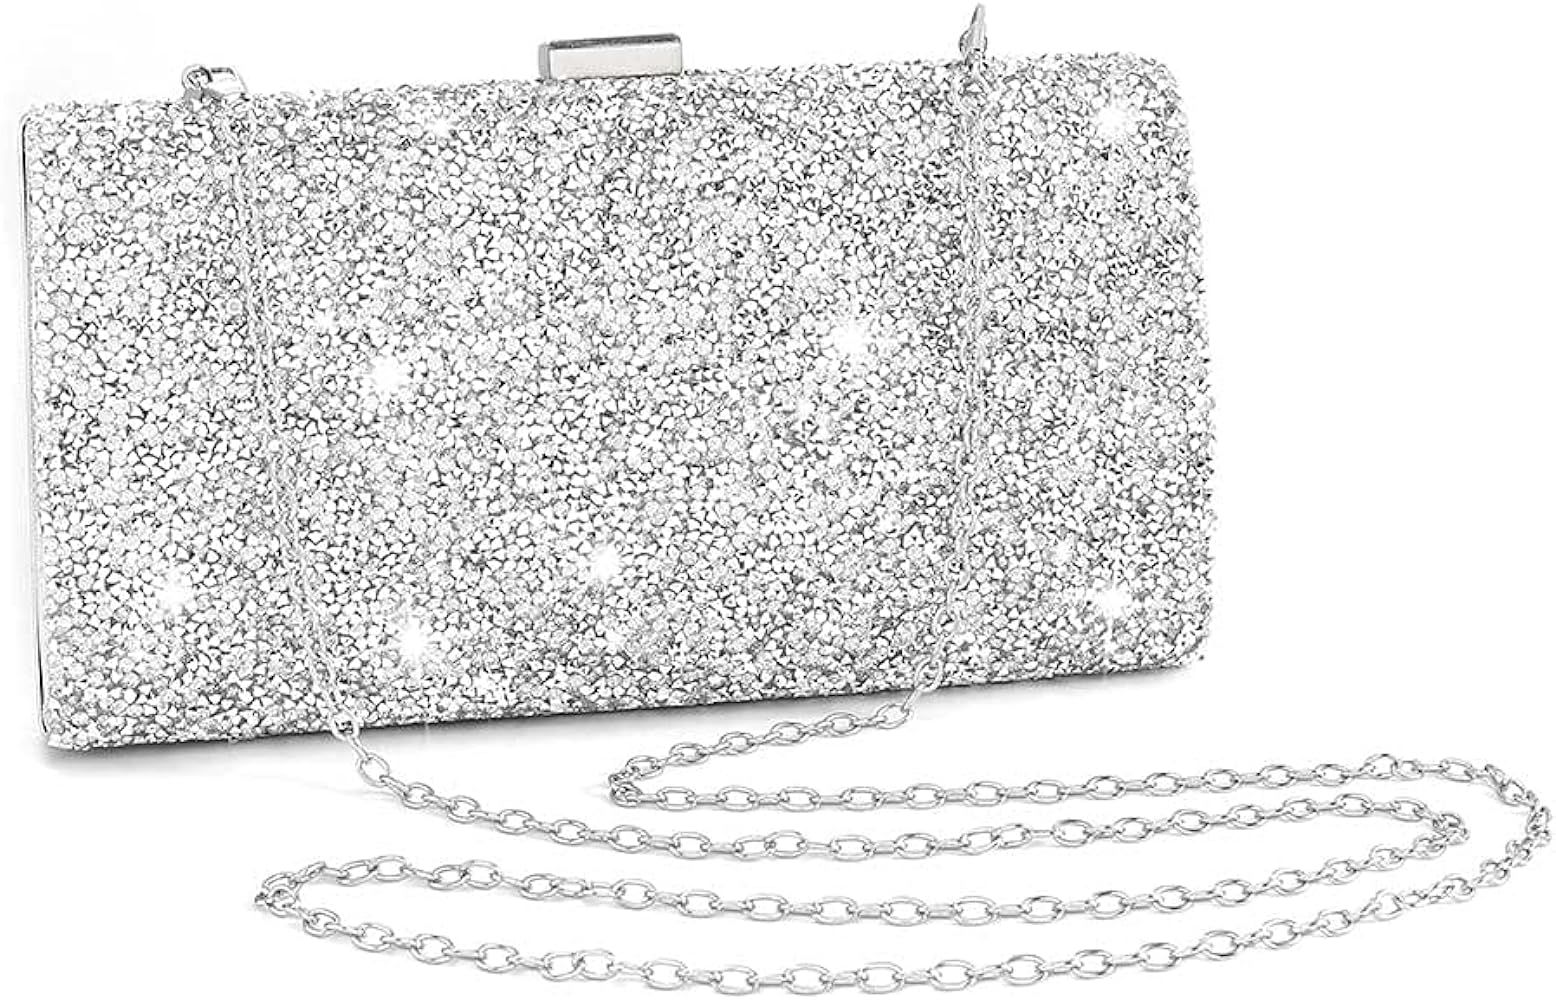 ELABEST Glitter Evening Clutch Bag Rhinestone Handbag Crossbody Purse Wedding Party Bag for Women... | Amazon (US)